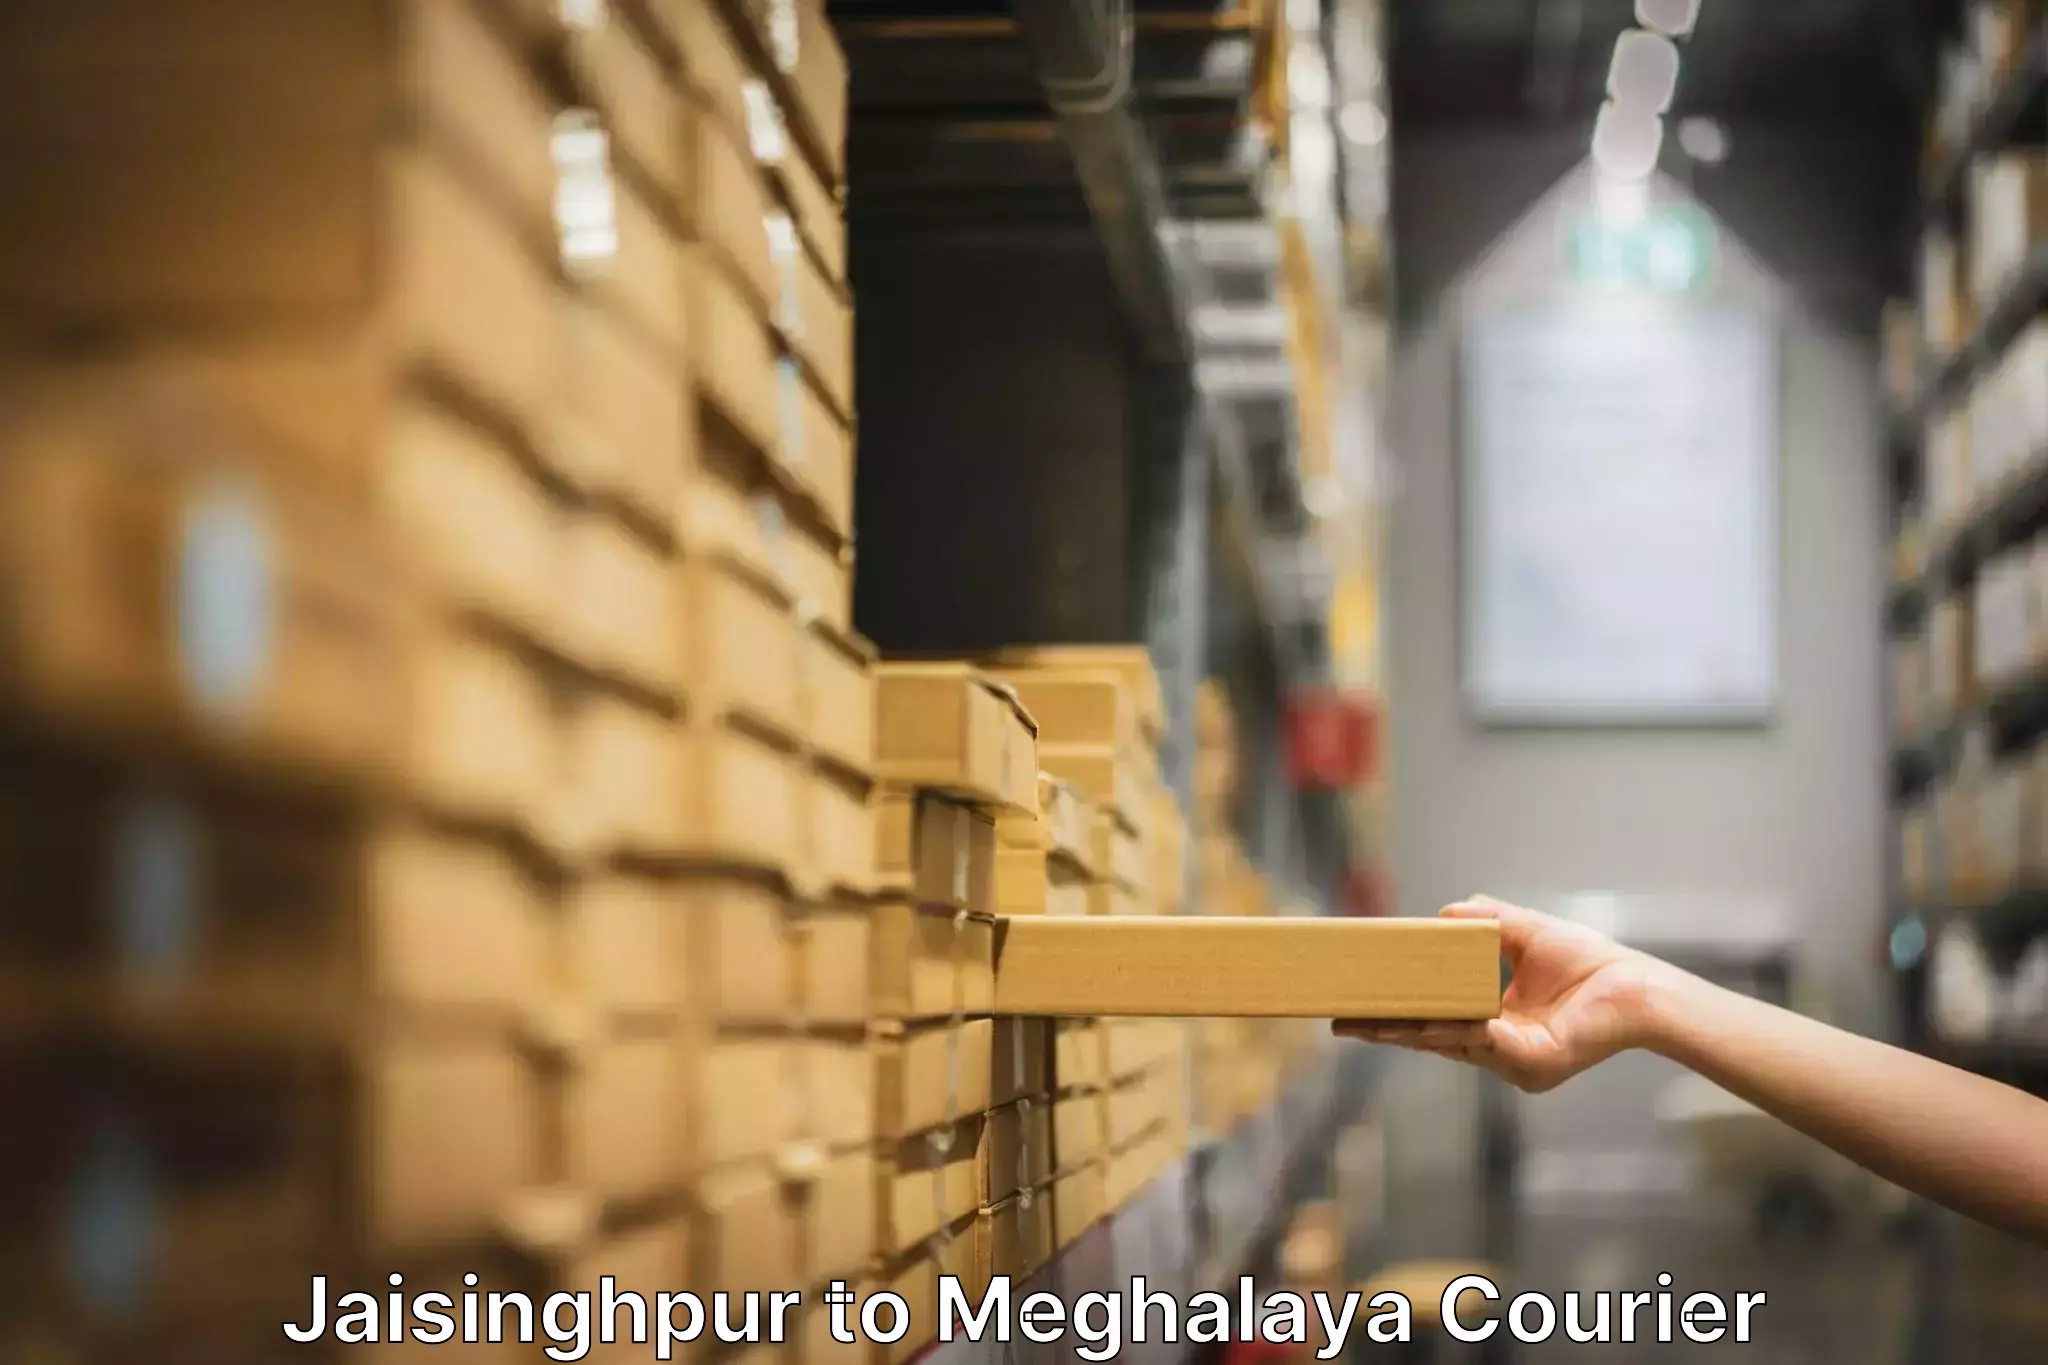 Furniture transport experts Jaisinghpur to Meghalaya